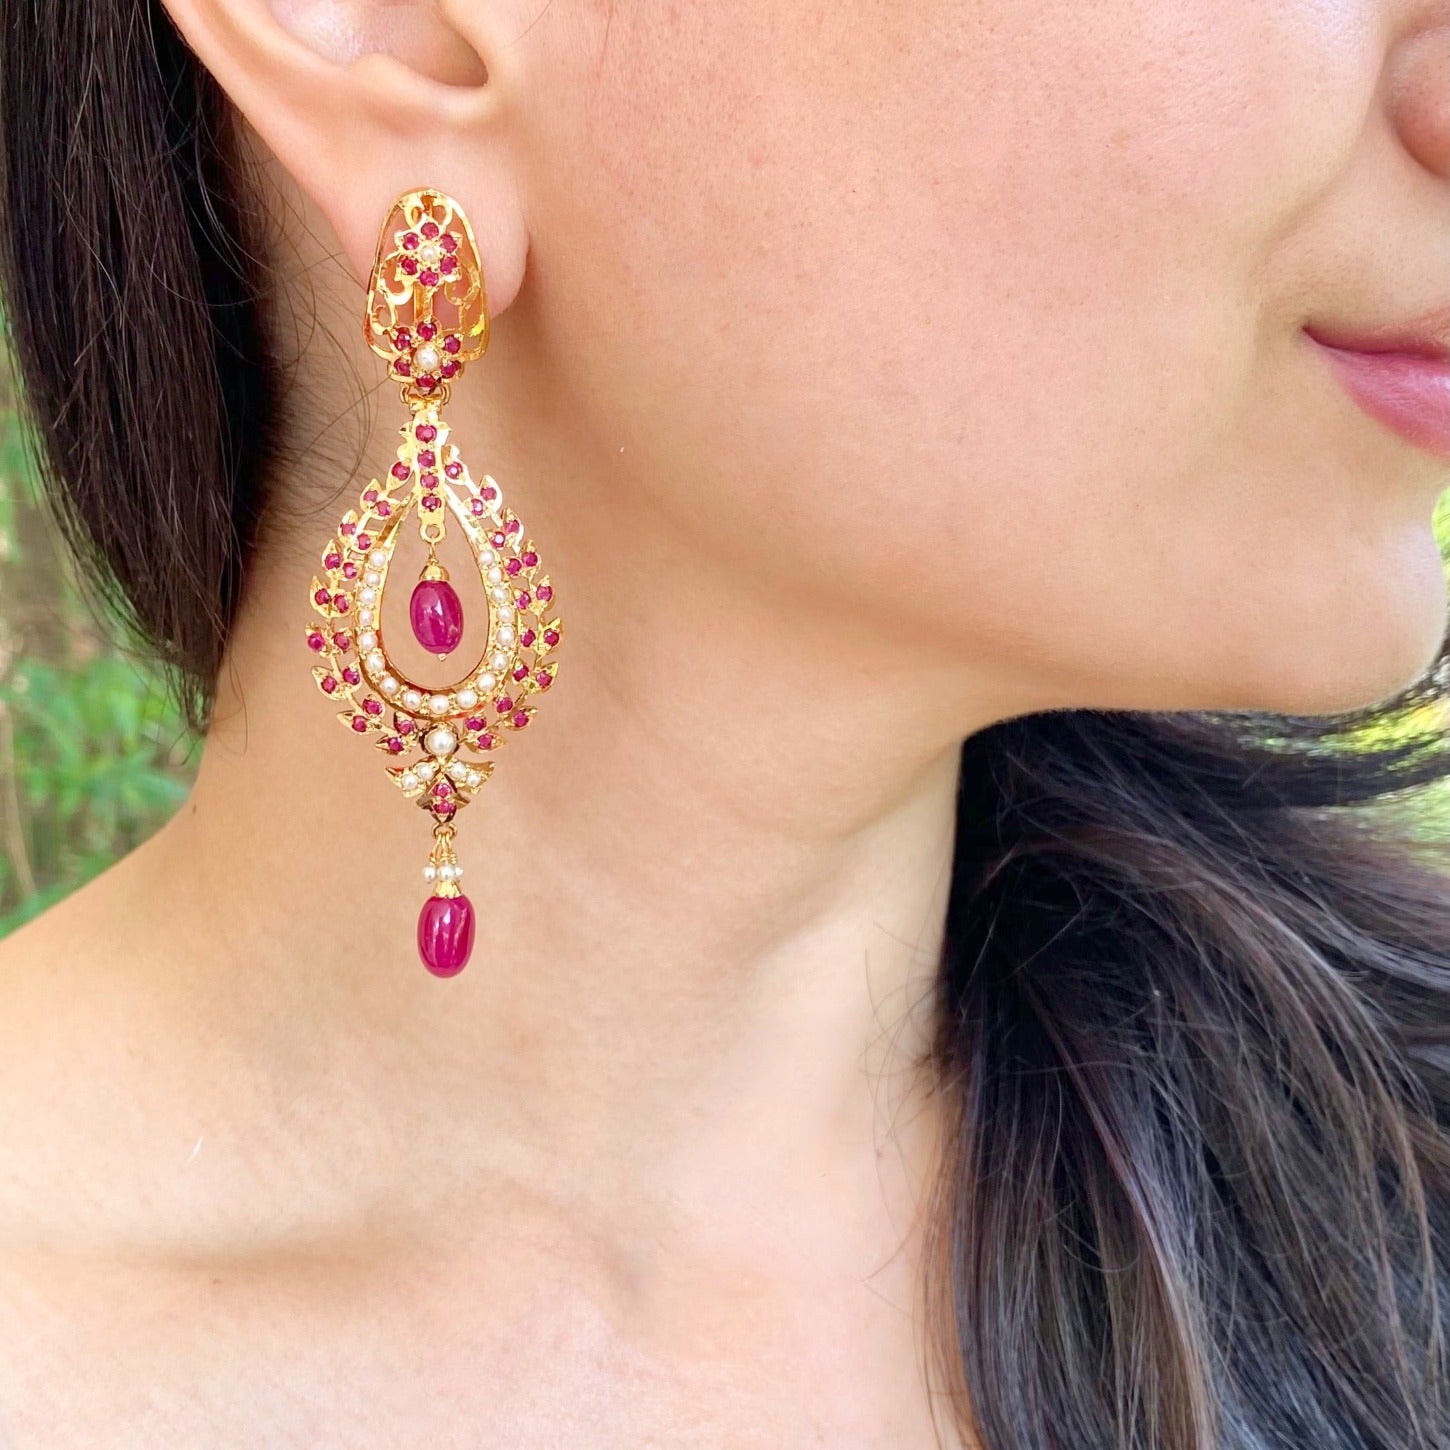 gold look alike earrings for women in silver